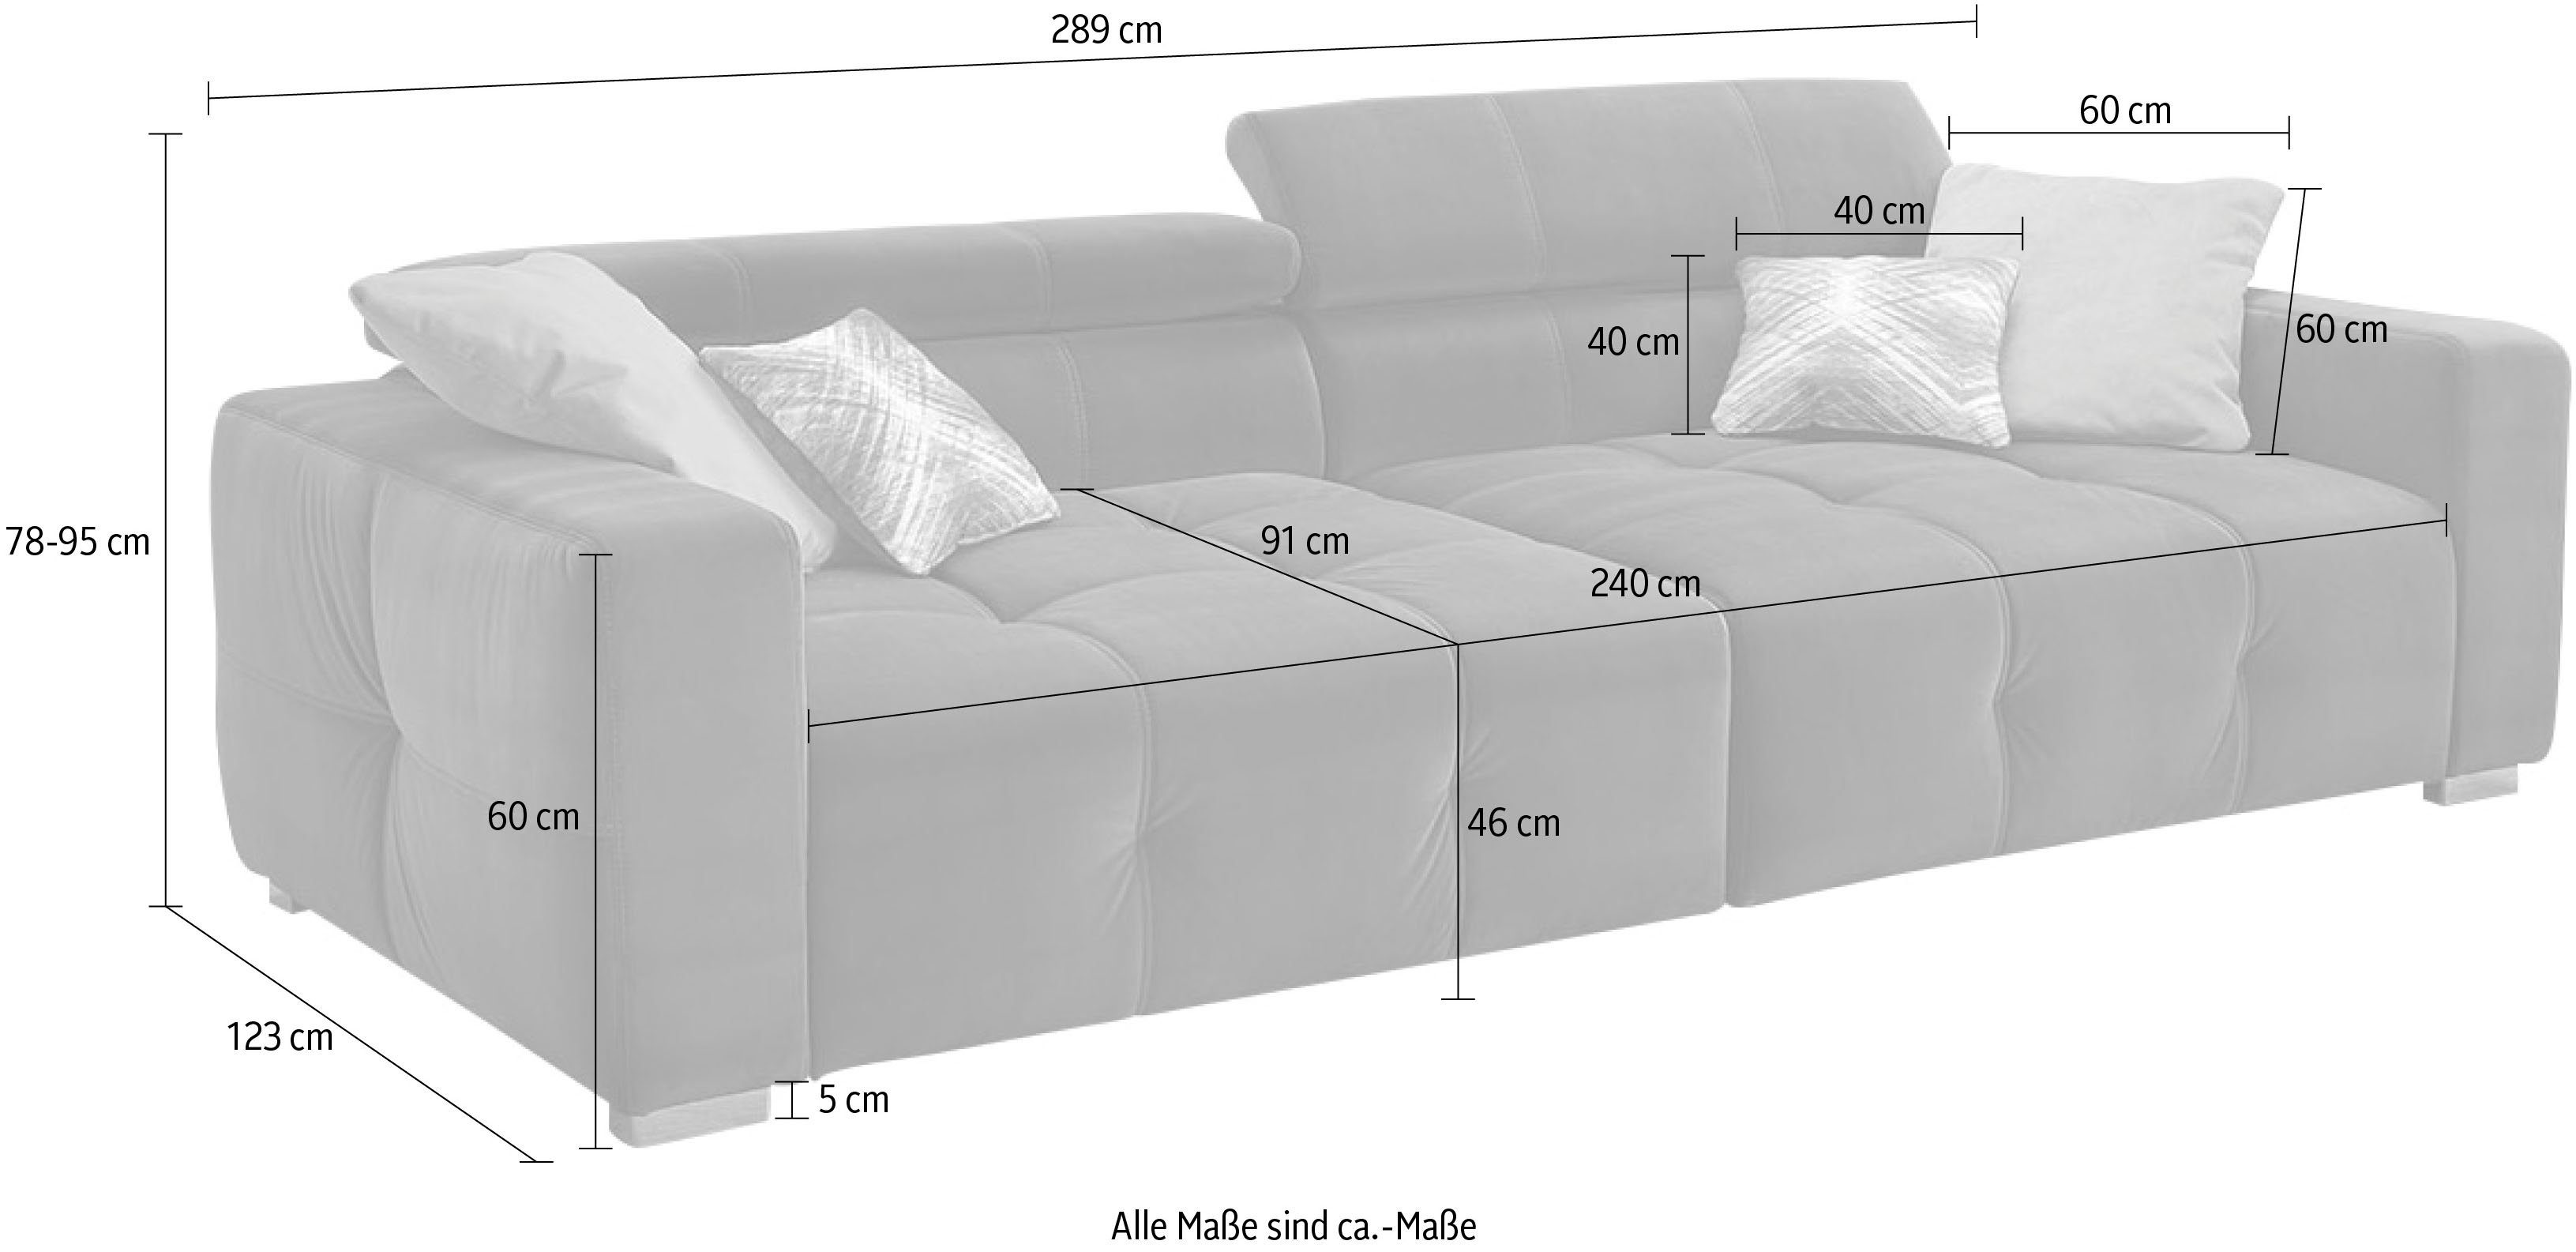 Jockenhöfer Gruppe und mit Wellenfederung, grau Big-Sofa Sitzkomfort Kopfstützen verstellbare mehrfach Trento